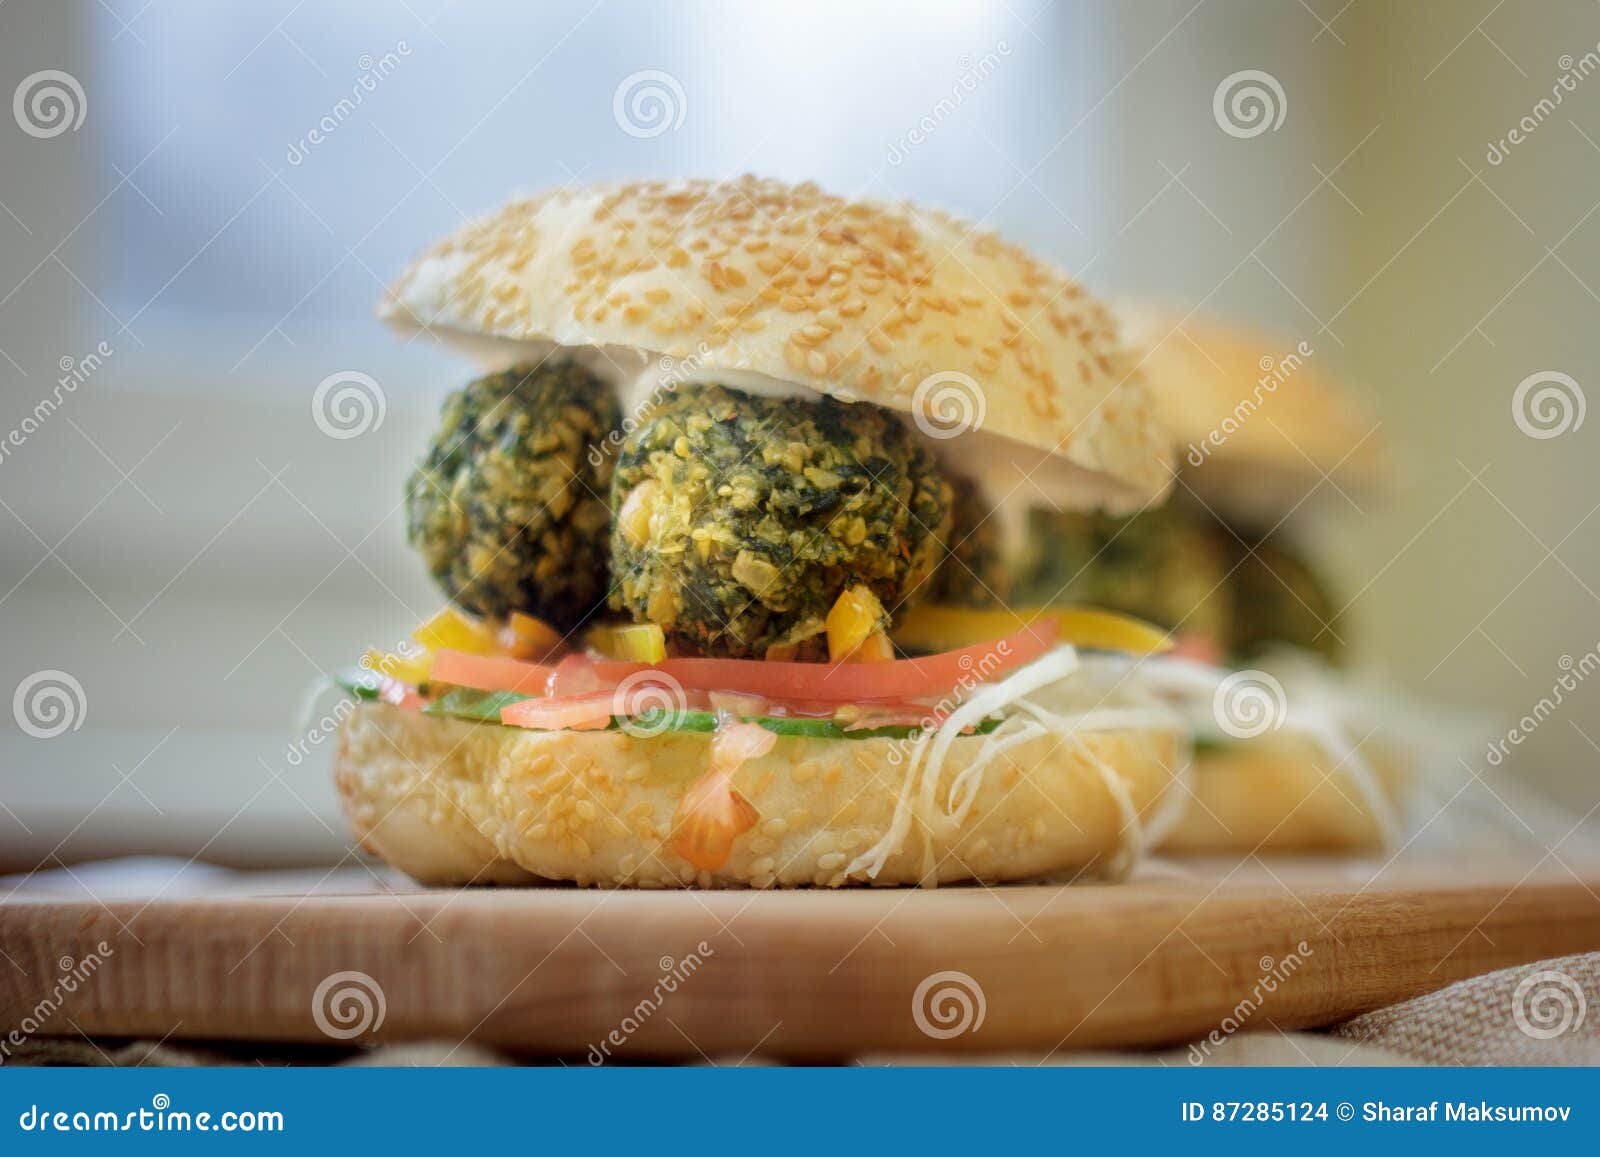 Alimentos de preparación rápida vegetarianos - hamburguesa del falafel en el tablero de madera